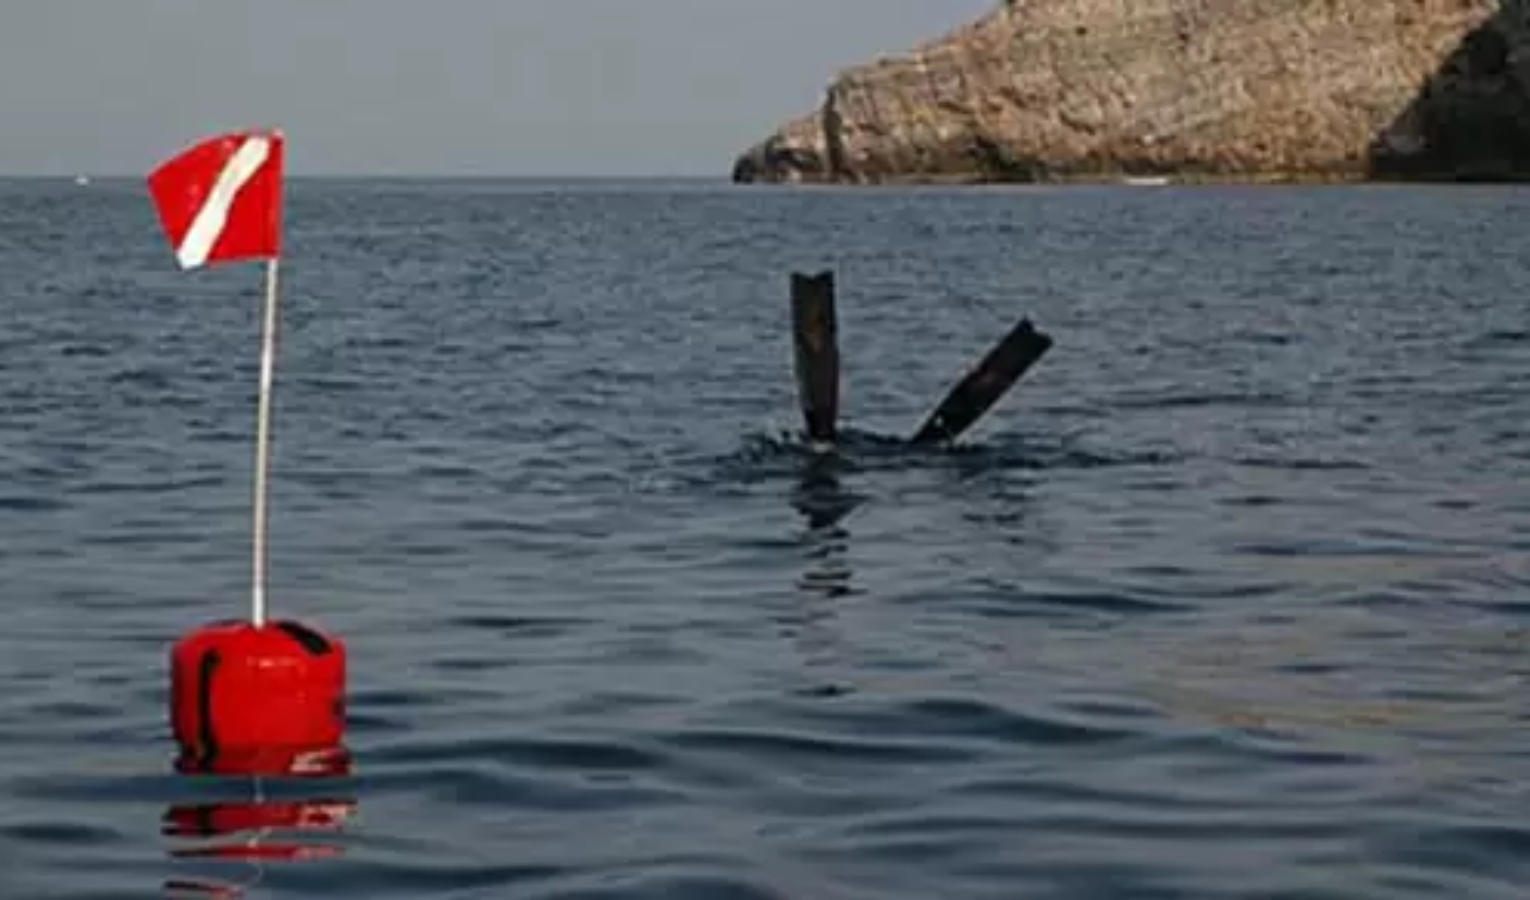 Malore durante immersione in vacanza in Sardegna, grave 53enne ligure